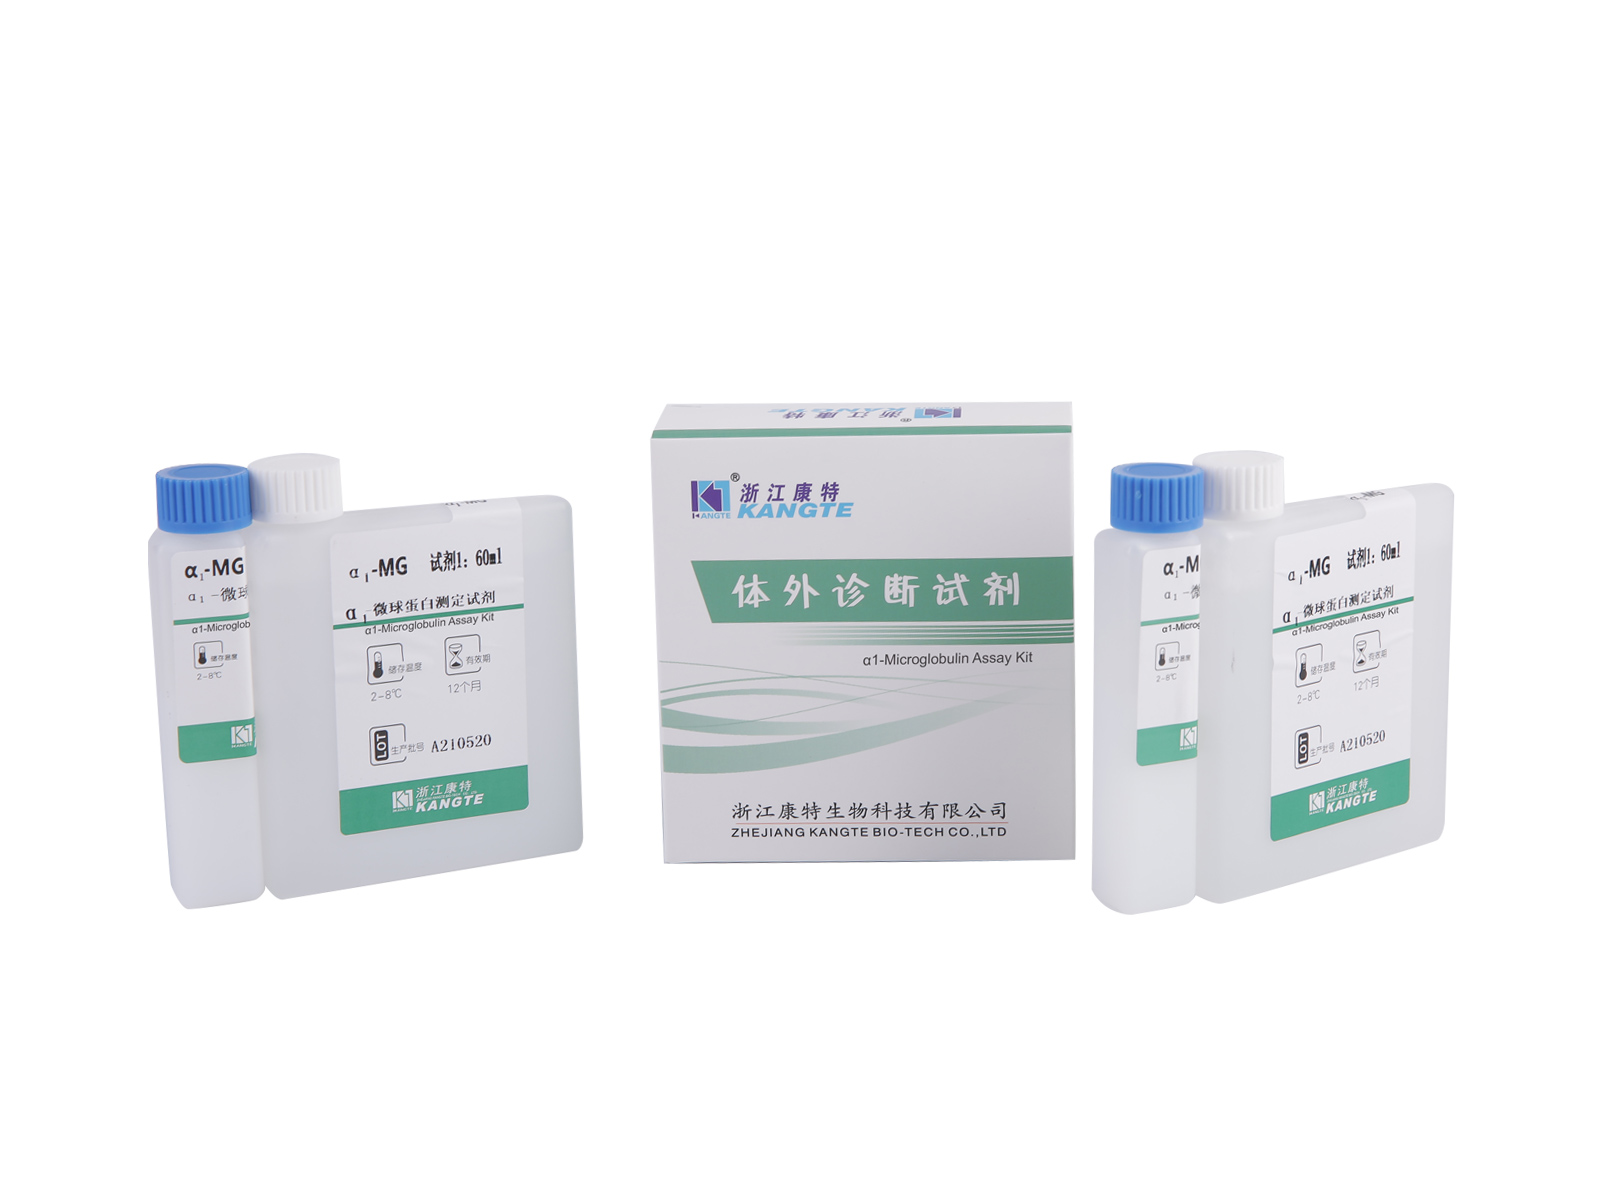 【α1-MG】Kit de dosage α1-microglobuline (méthode immunoturbidimétrique améliorée au latex)